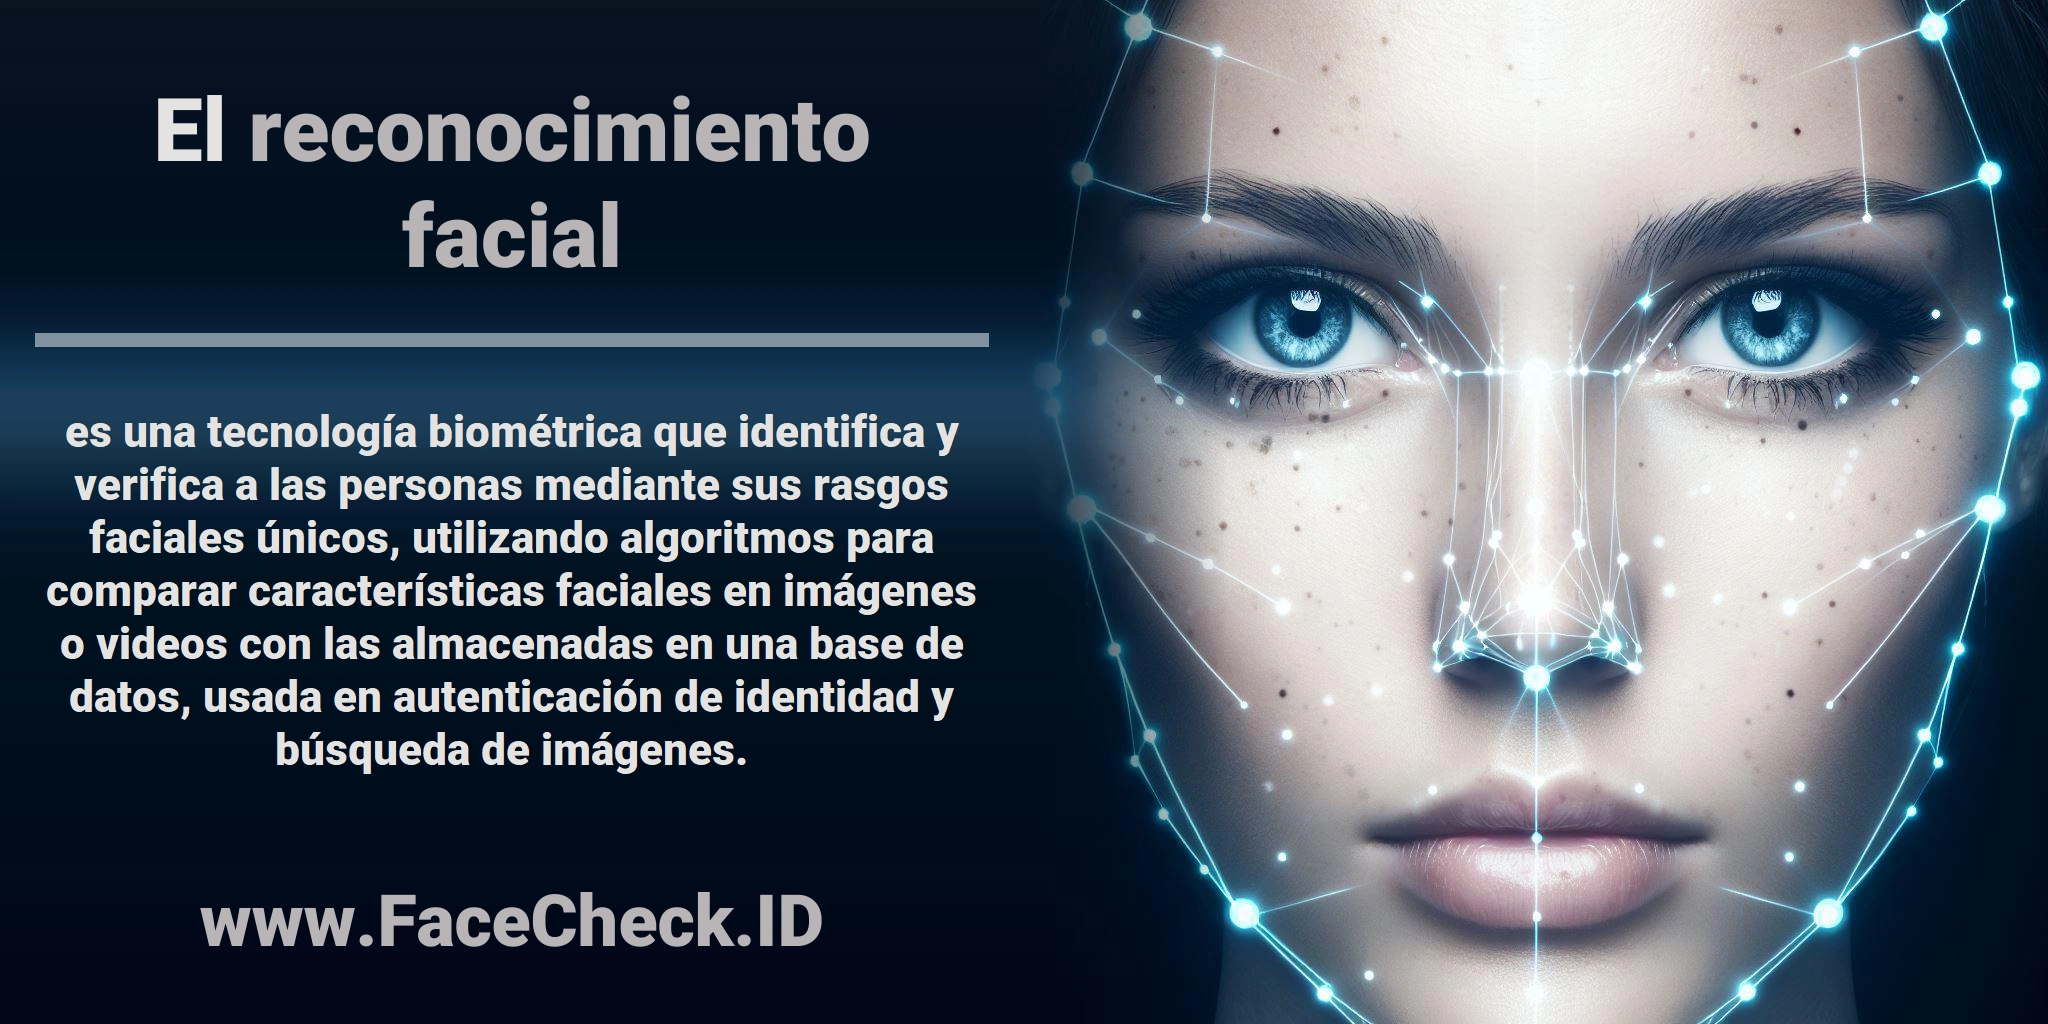 El <b>reconocimiento facial</b> es una tecnología biométrica que identifica y verifica a las personas mediante sus rasgos faciales únicos, utilizando algoritmos para comparar características faciales en imágenes o videos con las almacenadas en una base de datos, usada en autenticación de identidad y búsqueda de imágenes.